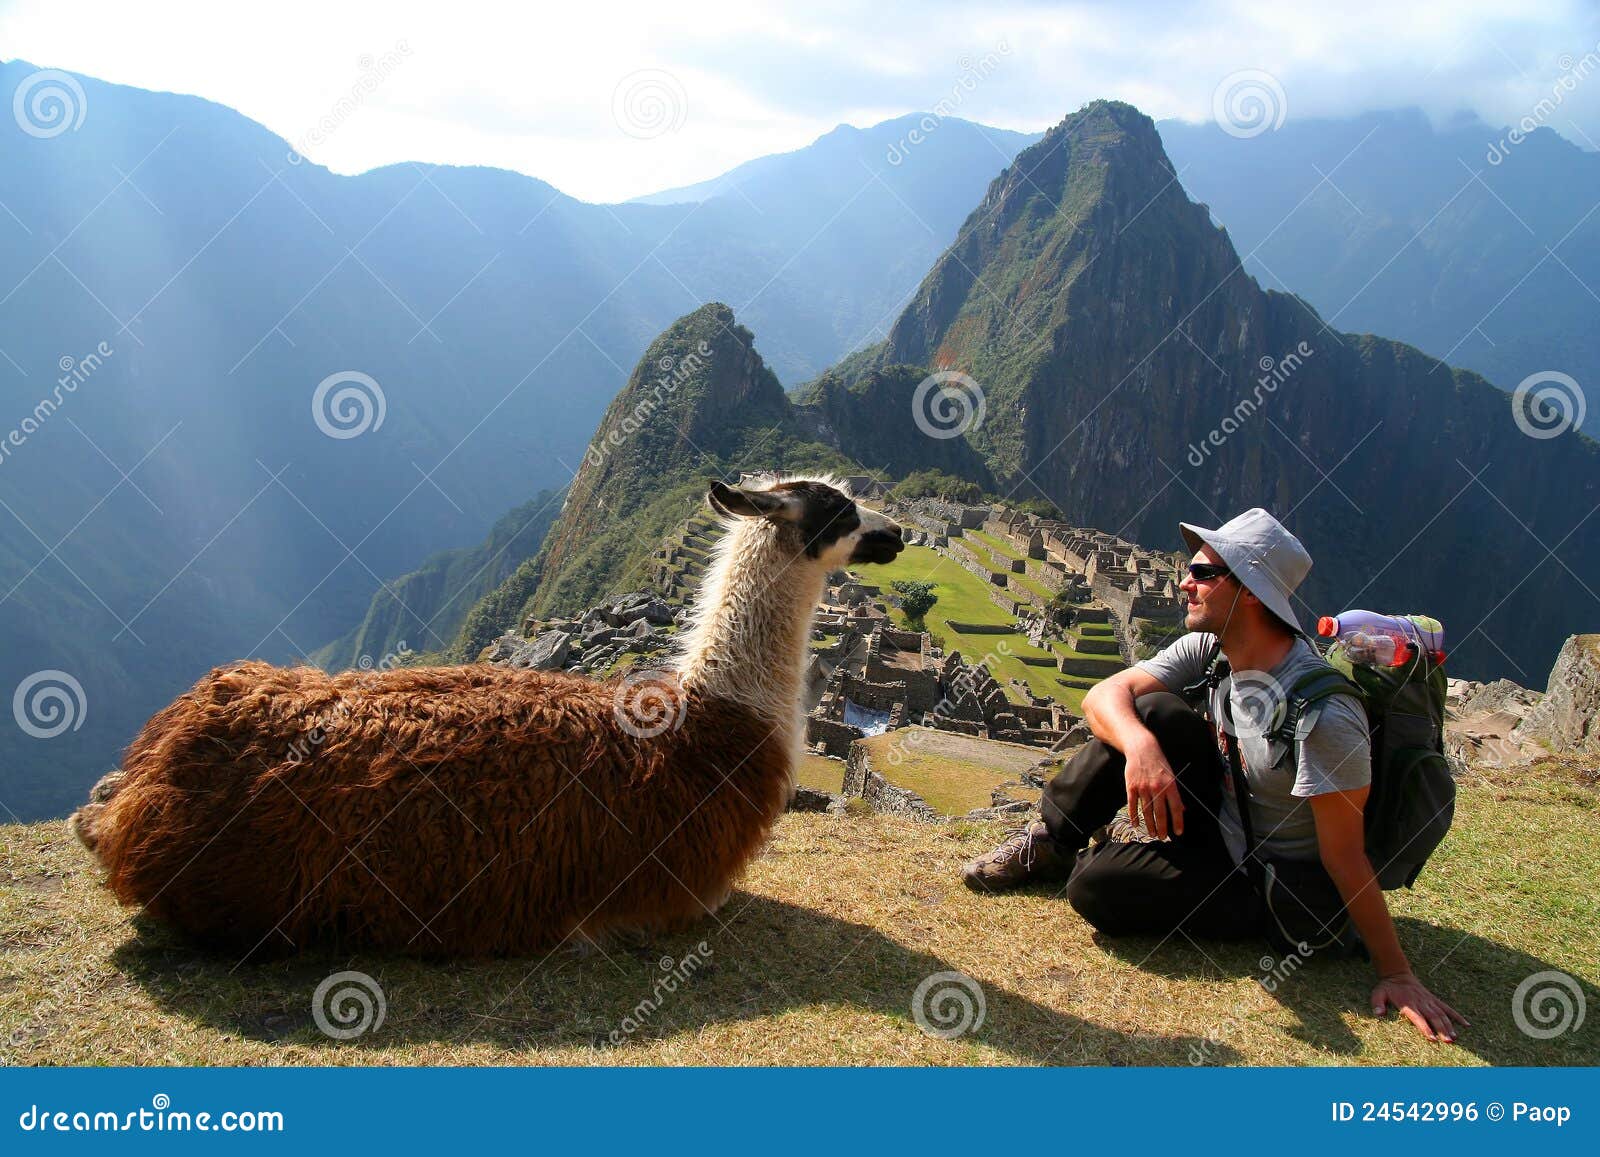 tourist and llama in machu picchu